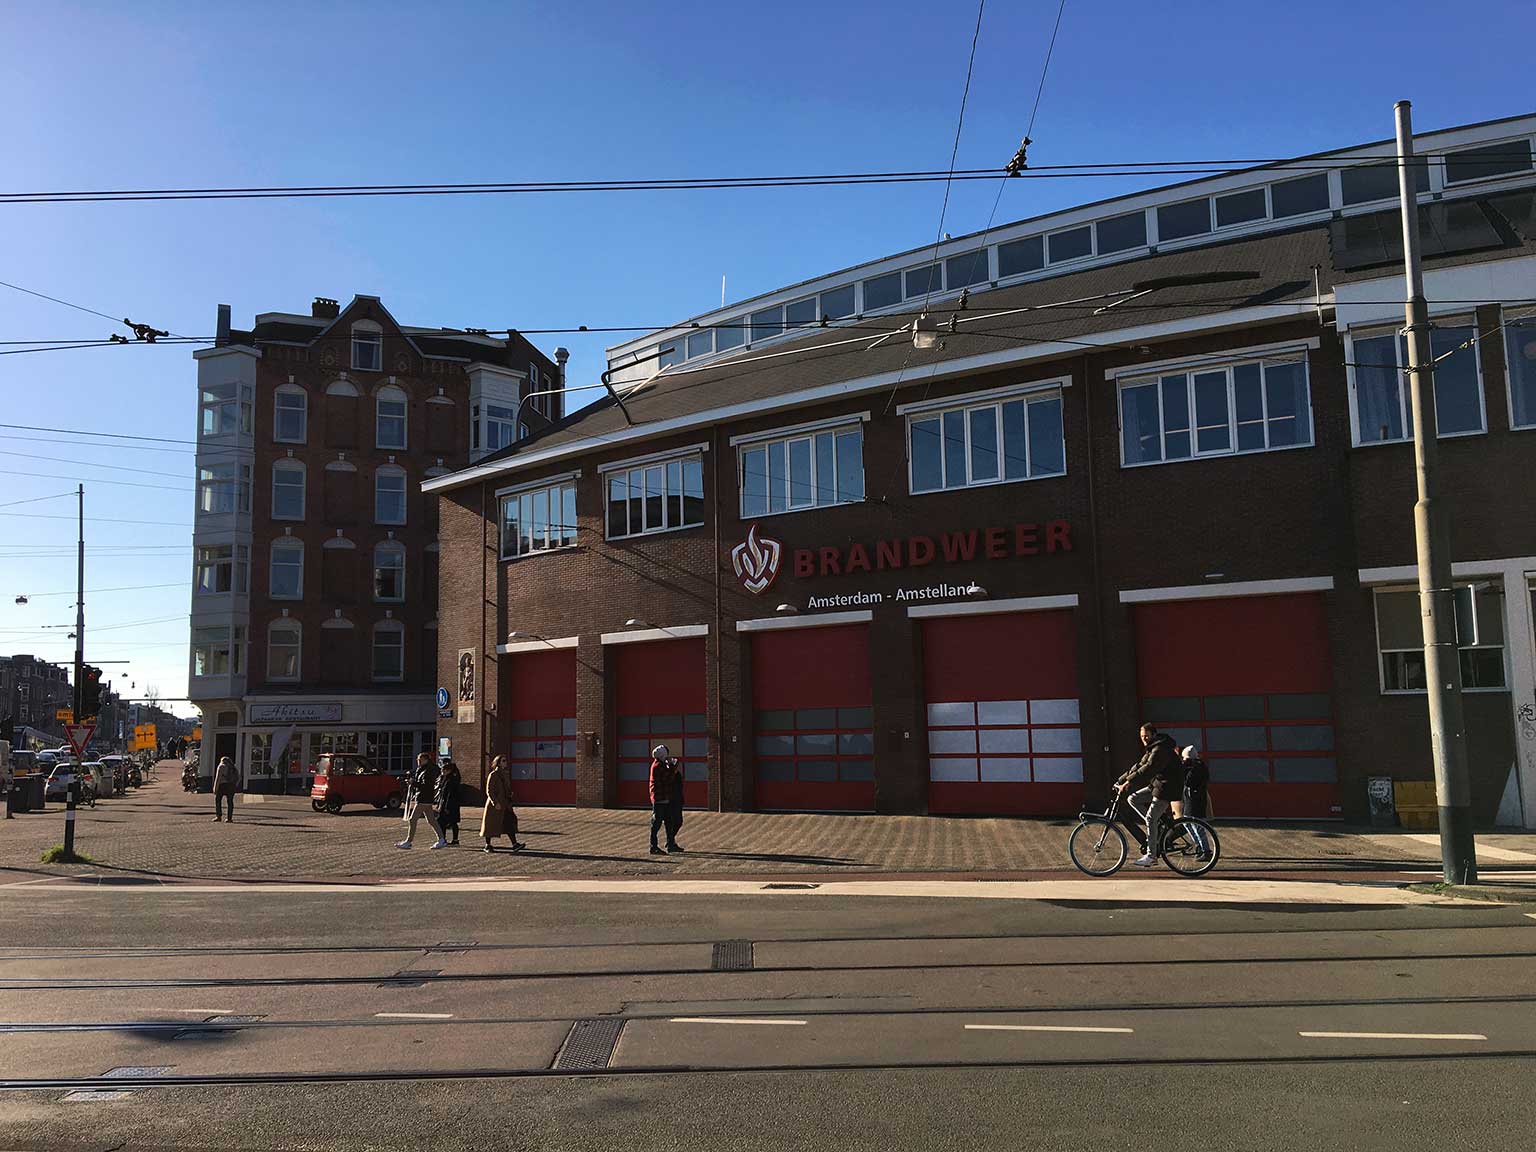 Fire station Hendrik, Rozengracht corner Marnixstraat, Amsterdam